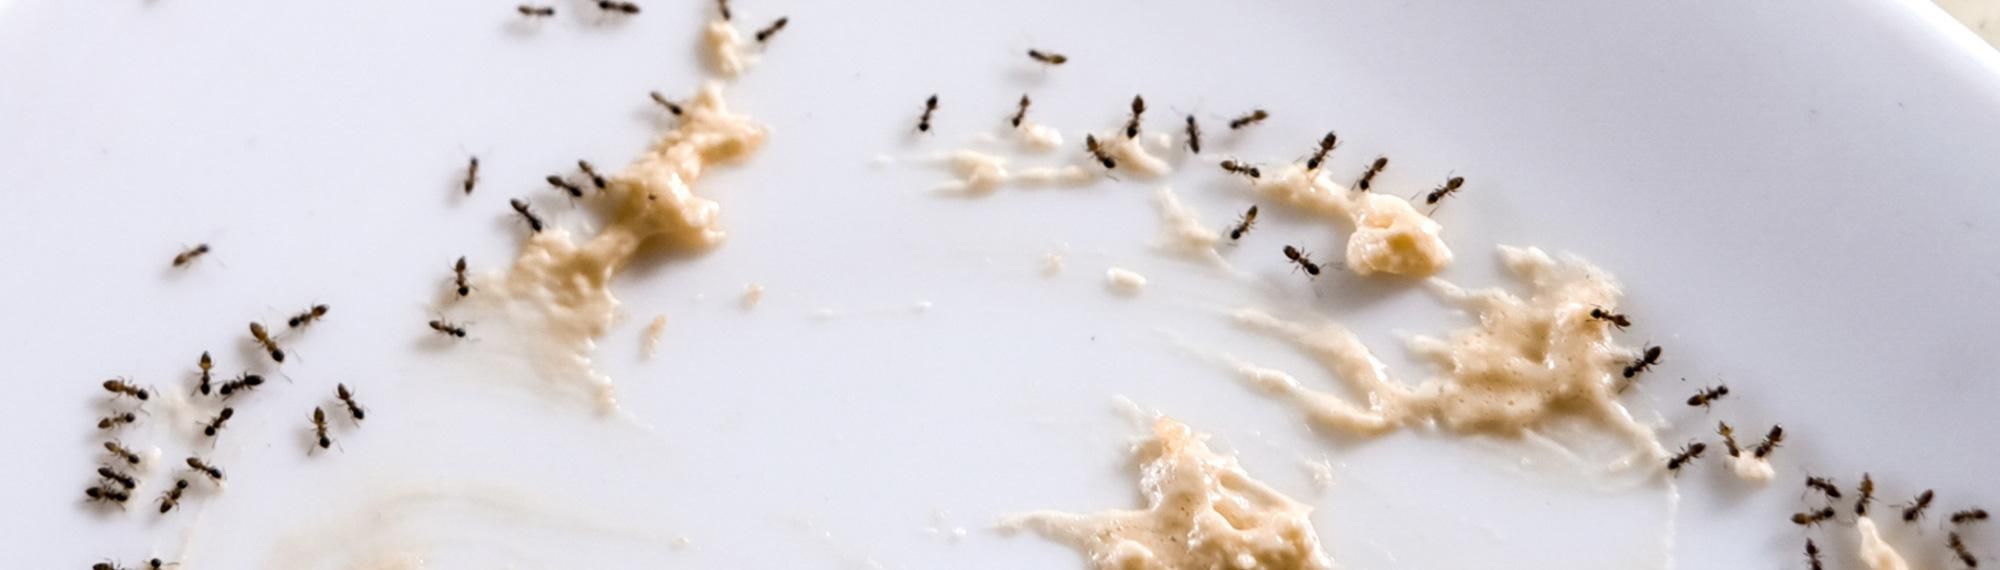 little black ants eating crumbs off floor